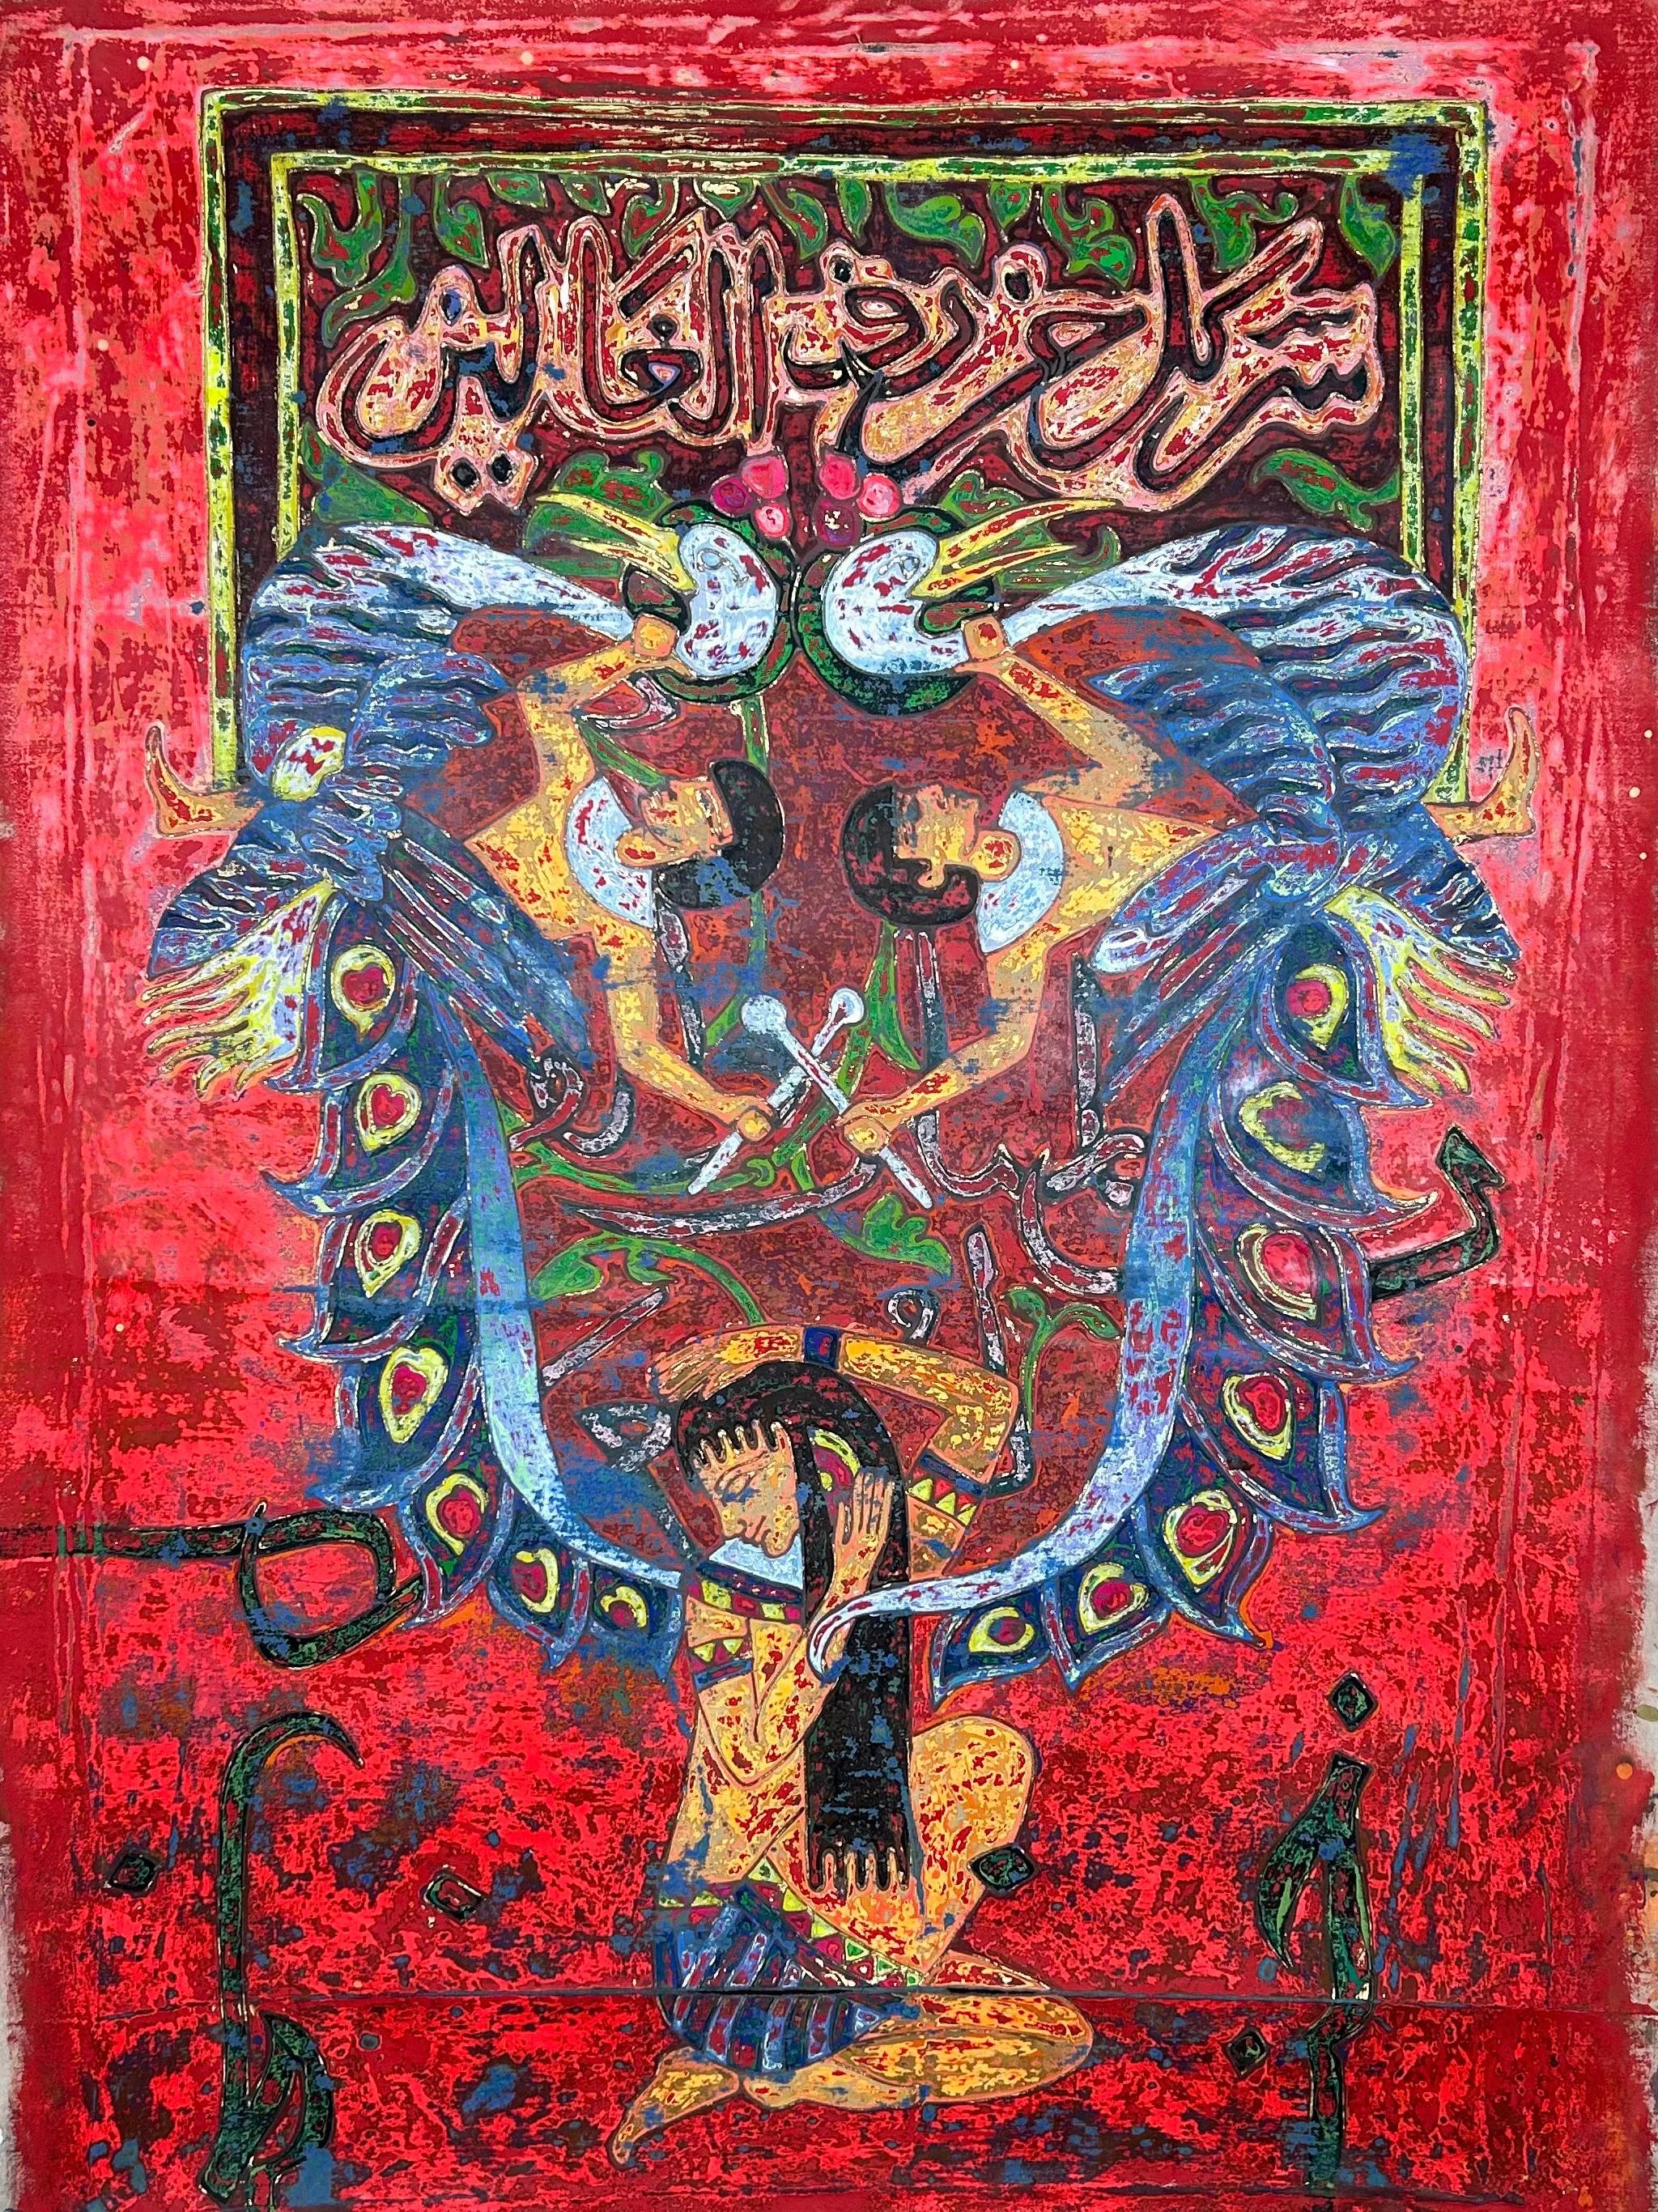 "Vol de la cigogne" Peinture abstraite 59" x 39" par Ibrahim Khatab

Ibrahim Khatab est né au Caire en 1984. Il travaille comme co-enseignant à l'université du Caire et mélange dans ses œuvres la peinture, l'art vidéo et l'installation. Il a